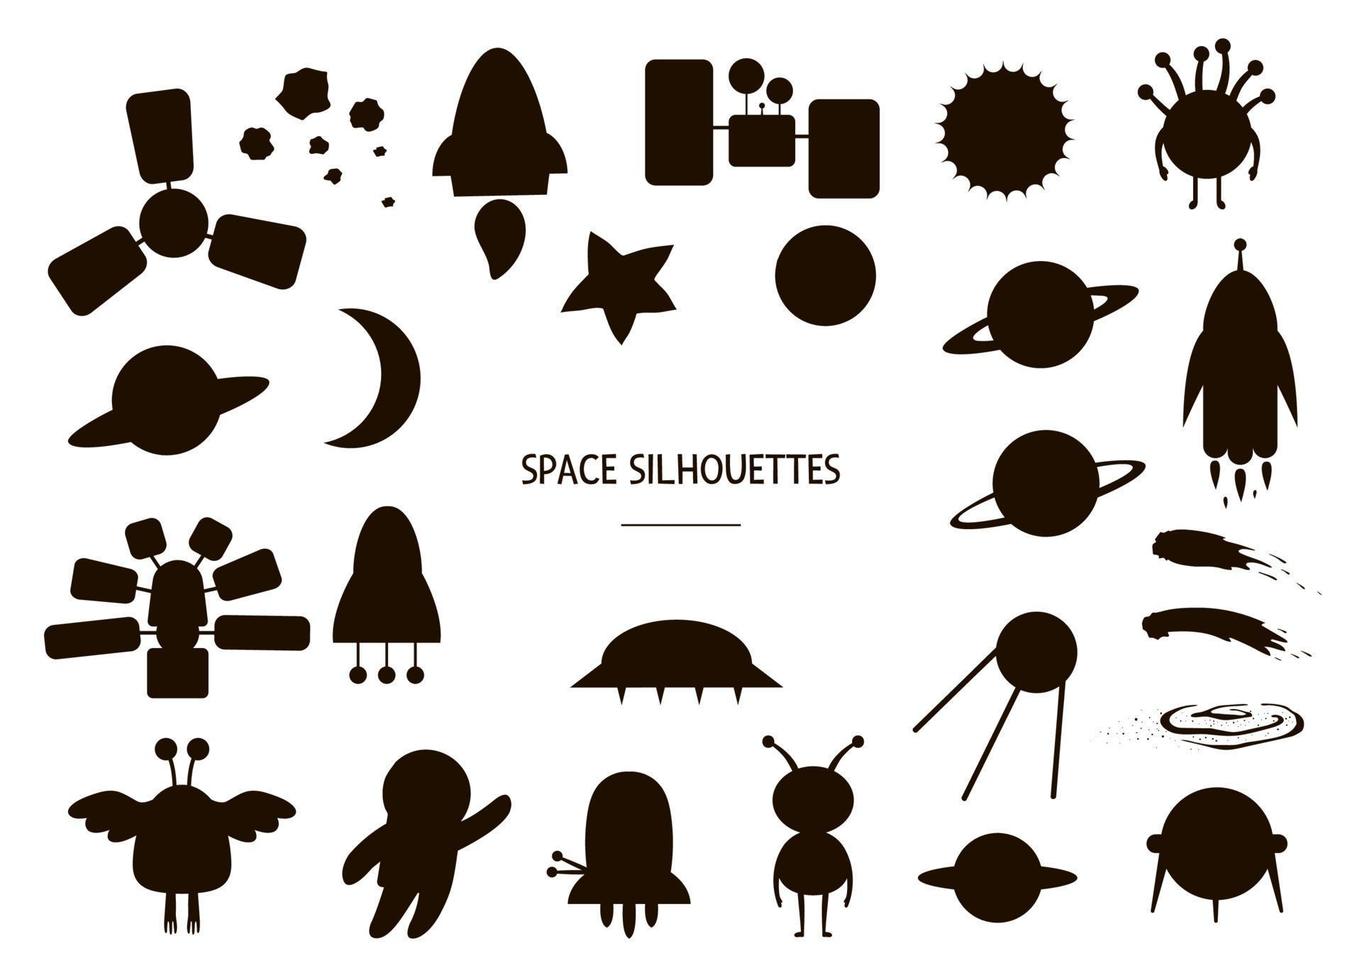 Vektor-Set von Weltraum-Silhouetten. Schwarz-Weiß-Darstellung von UFO, Planeten, Rakete und anderen kosmischen Objekten. lustige süße Schablonen zum Thema Astronomie. vektor